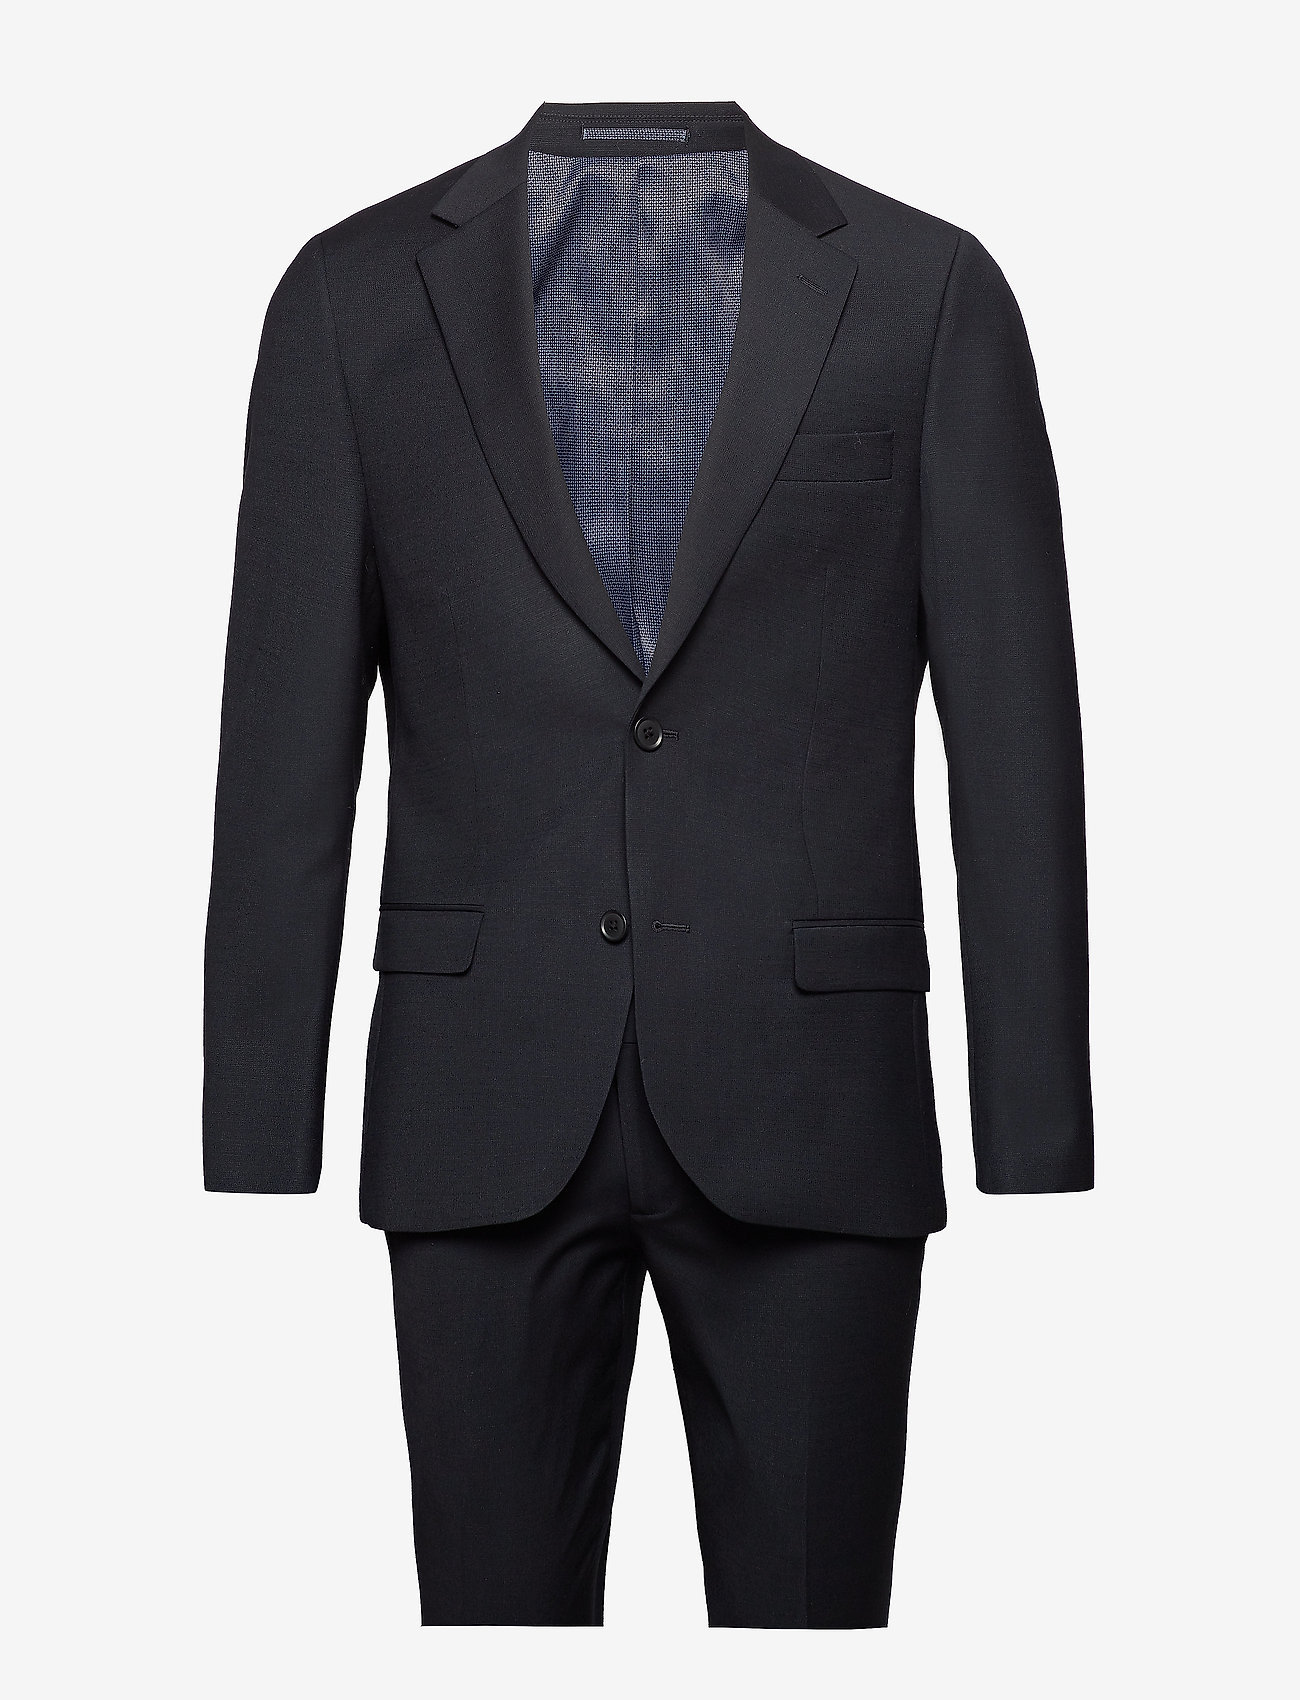 Bruun & Stengade - Hardmann, Suit Set - zweireiher anzüge - black - 0